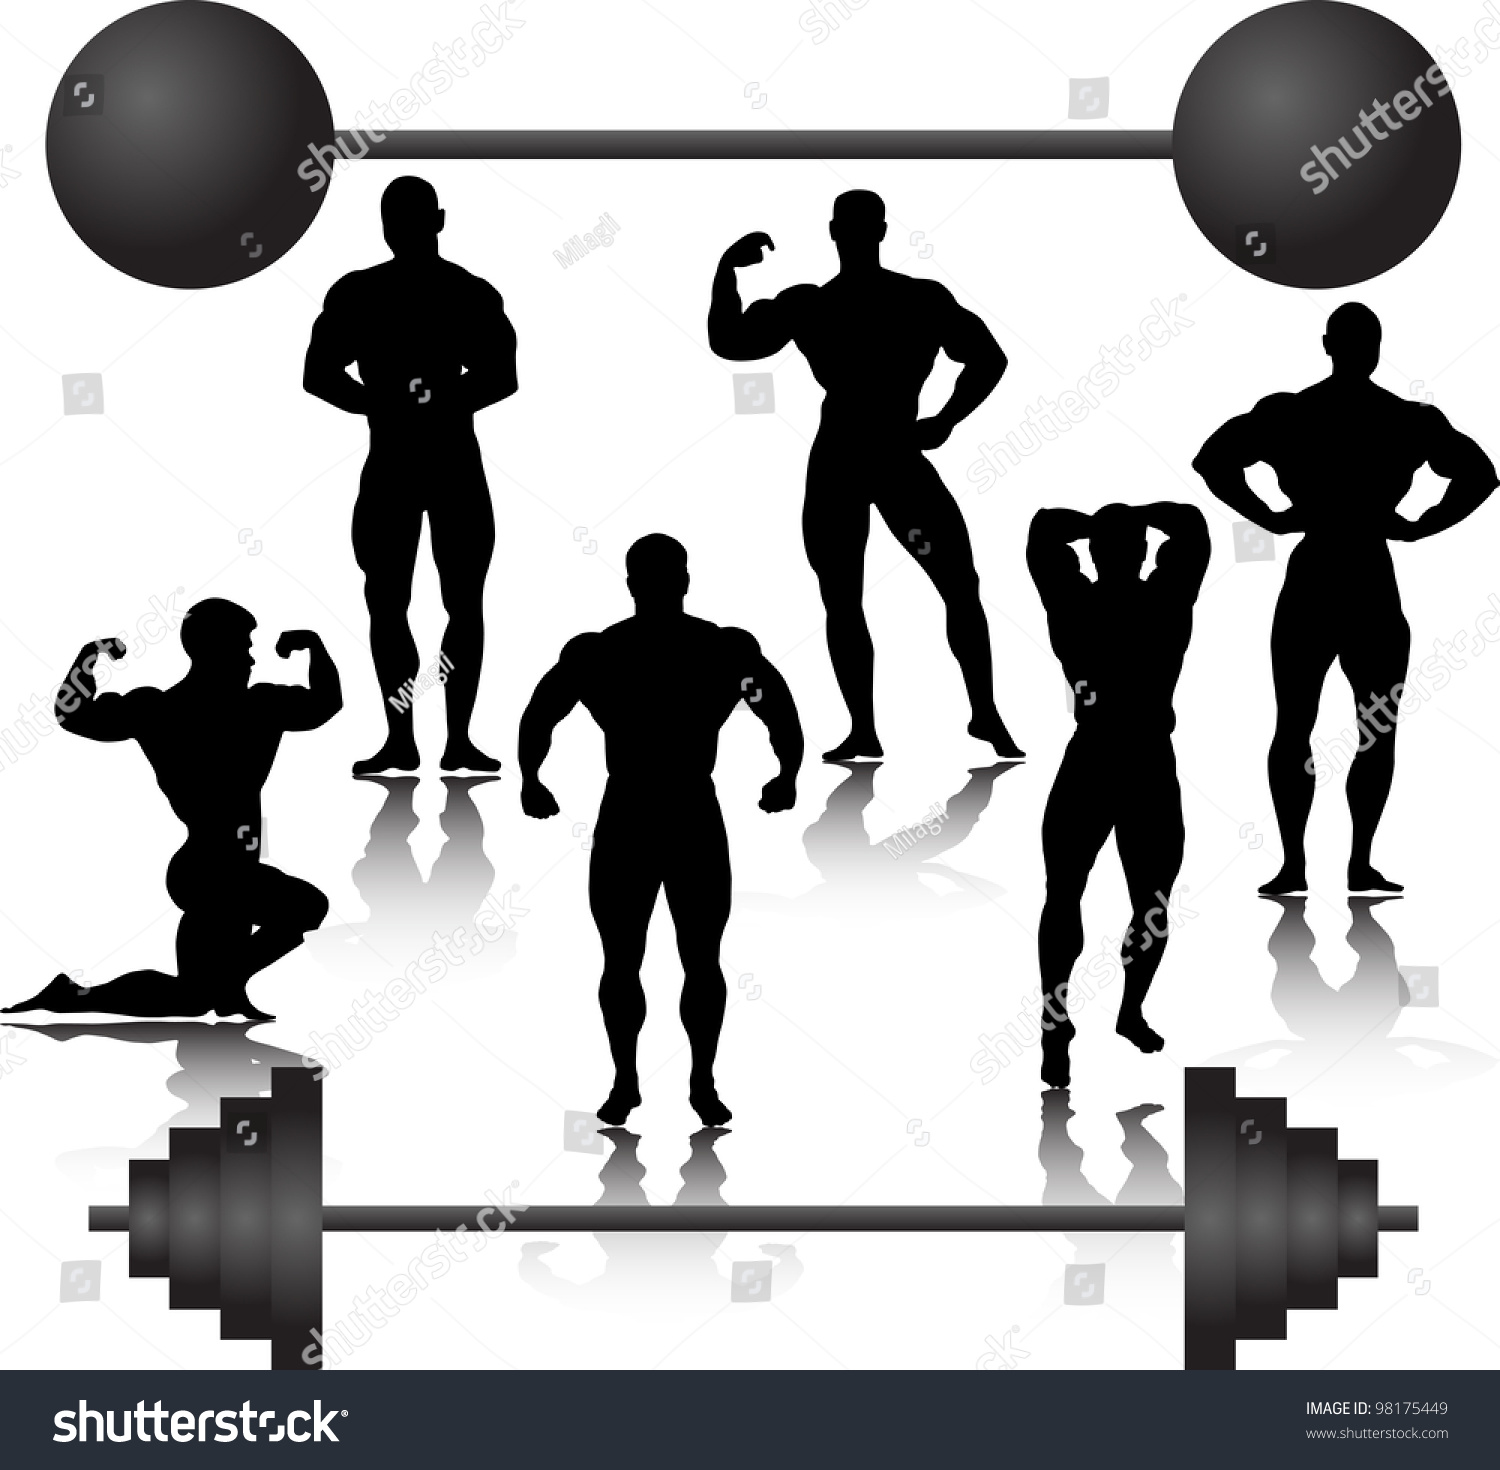 Bodybuilder Stock Vector Illustration 98175449 : Shutterstock